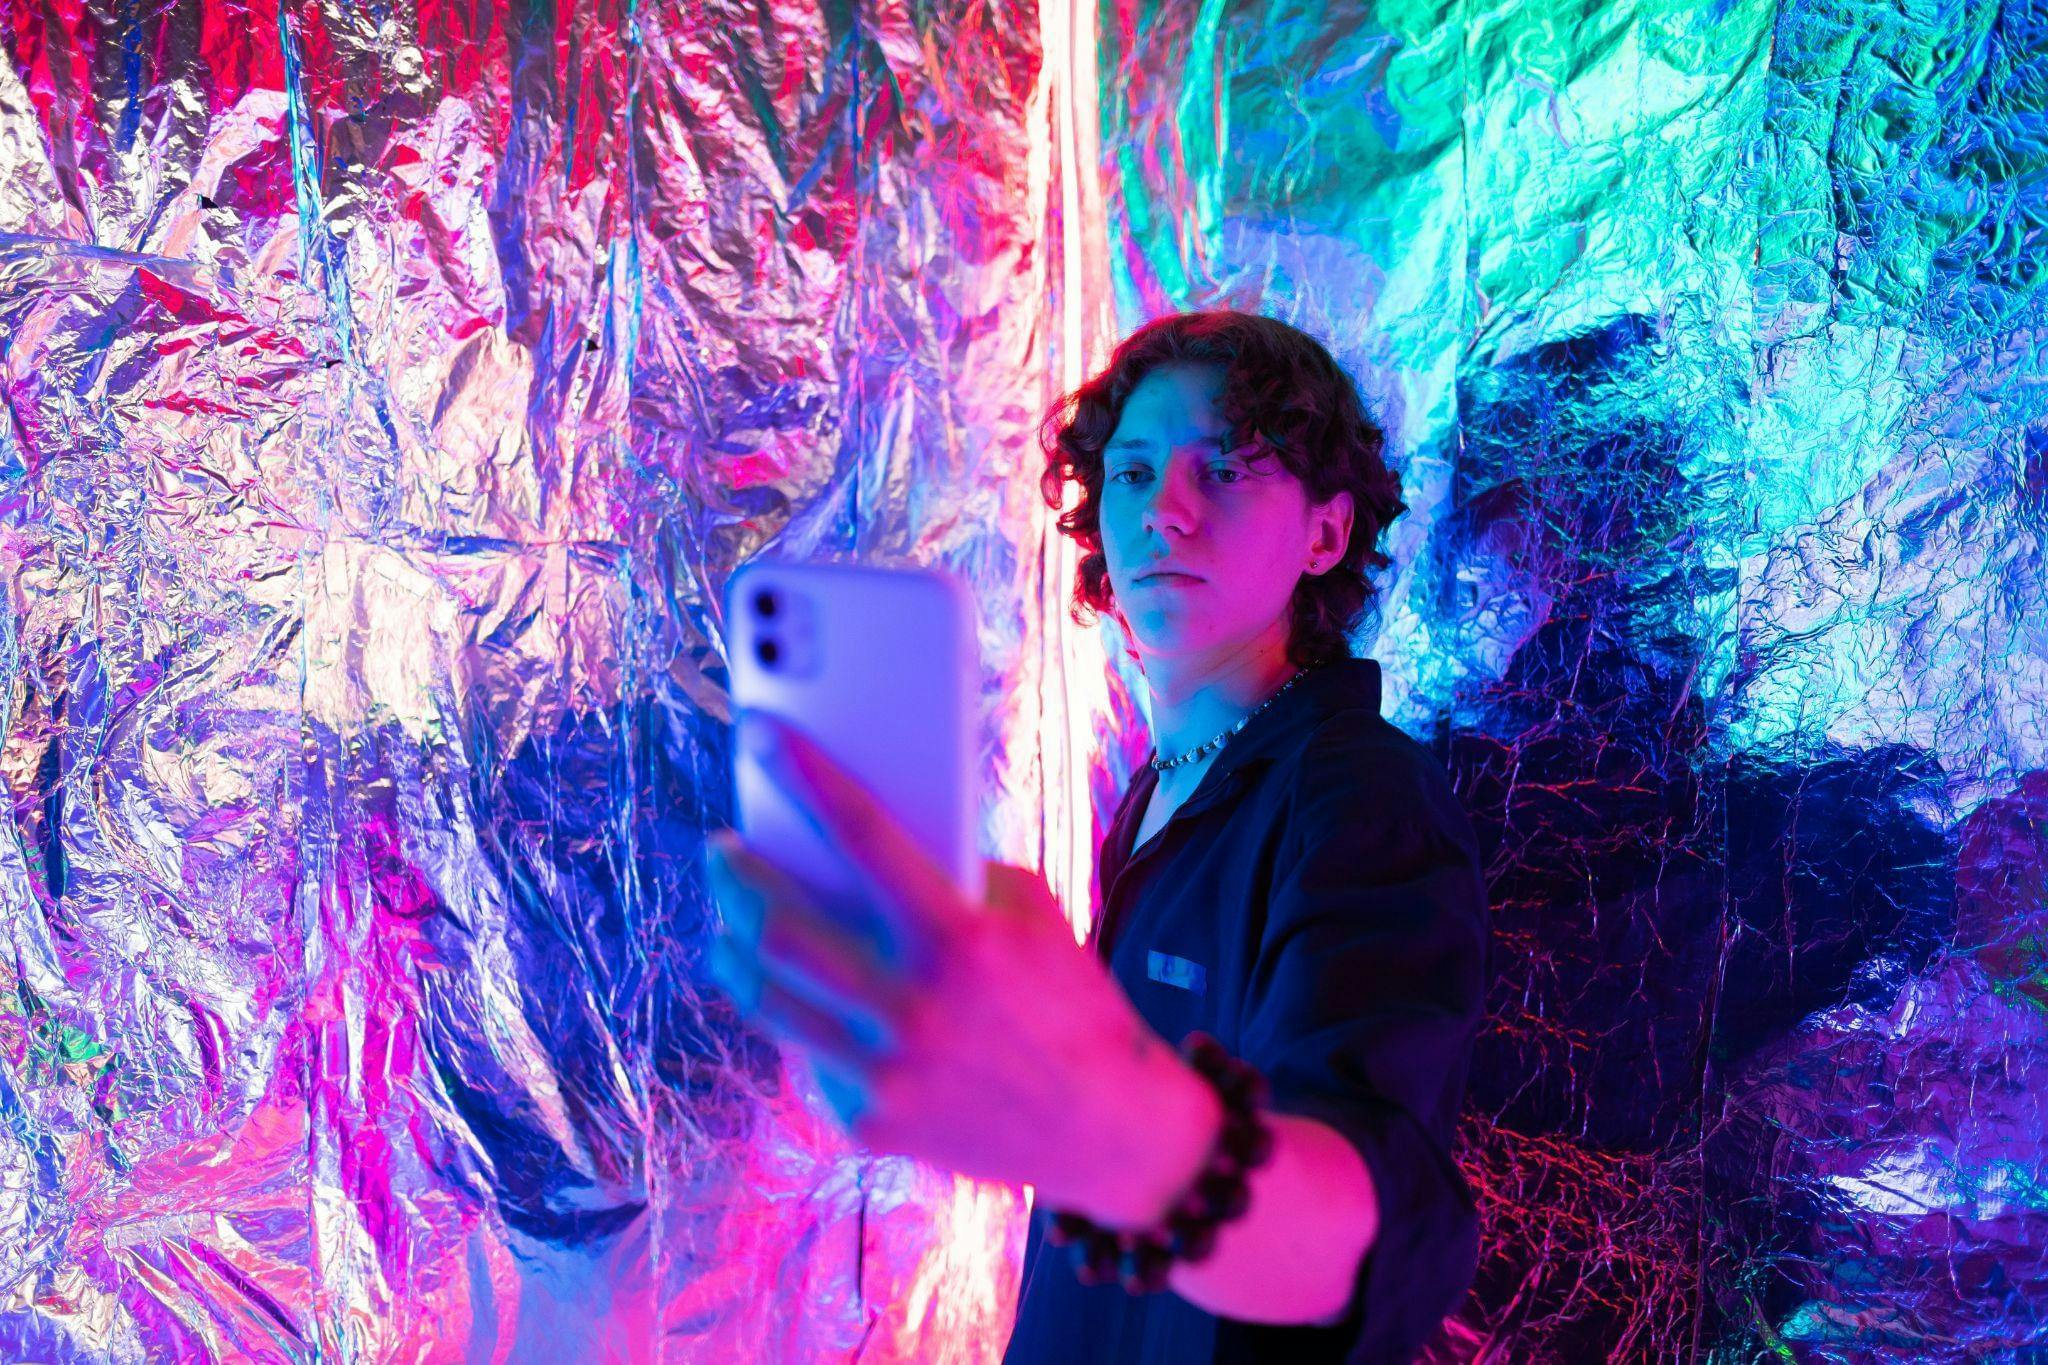 Jongere met donkere krullen staat met diens smartphone in de hand tegen een muur van glimmende folie. De jongere lijkt een selfie te maken.